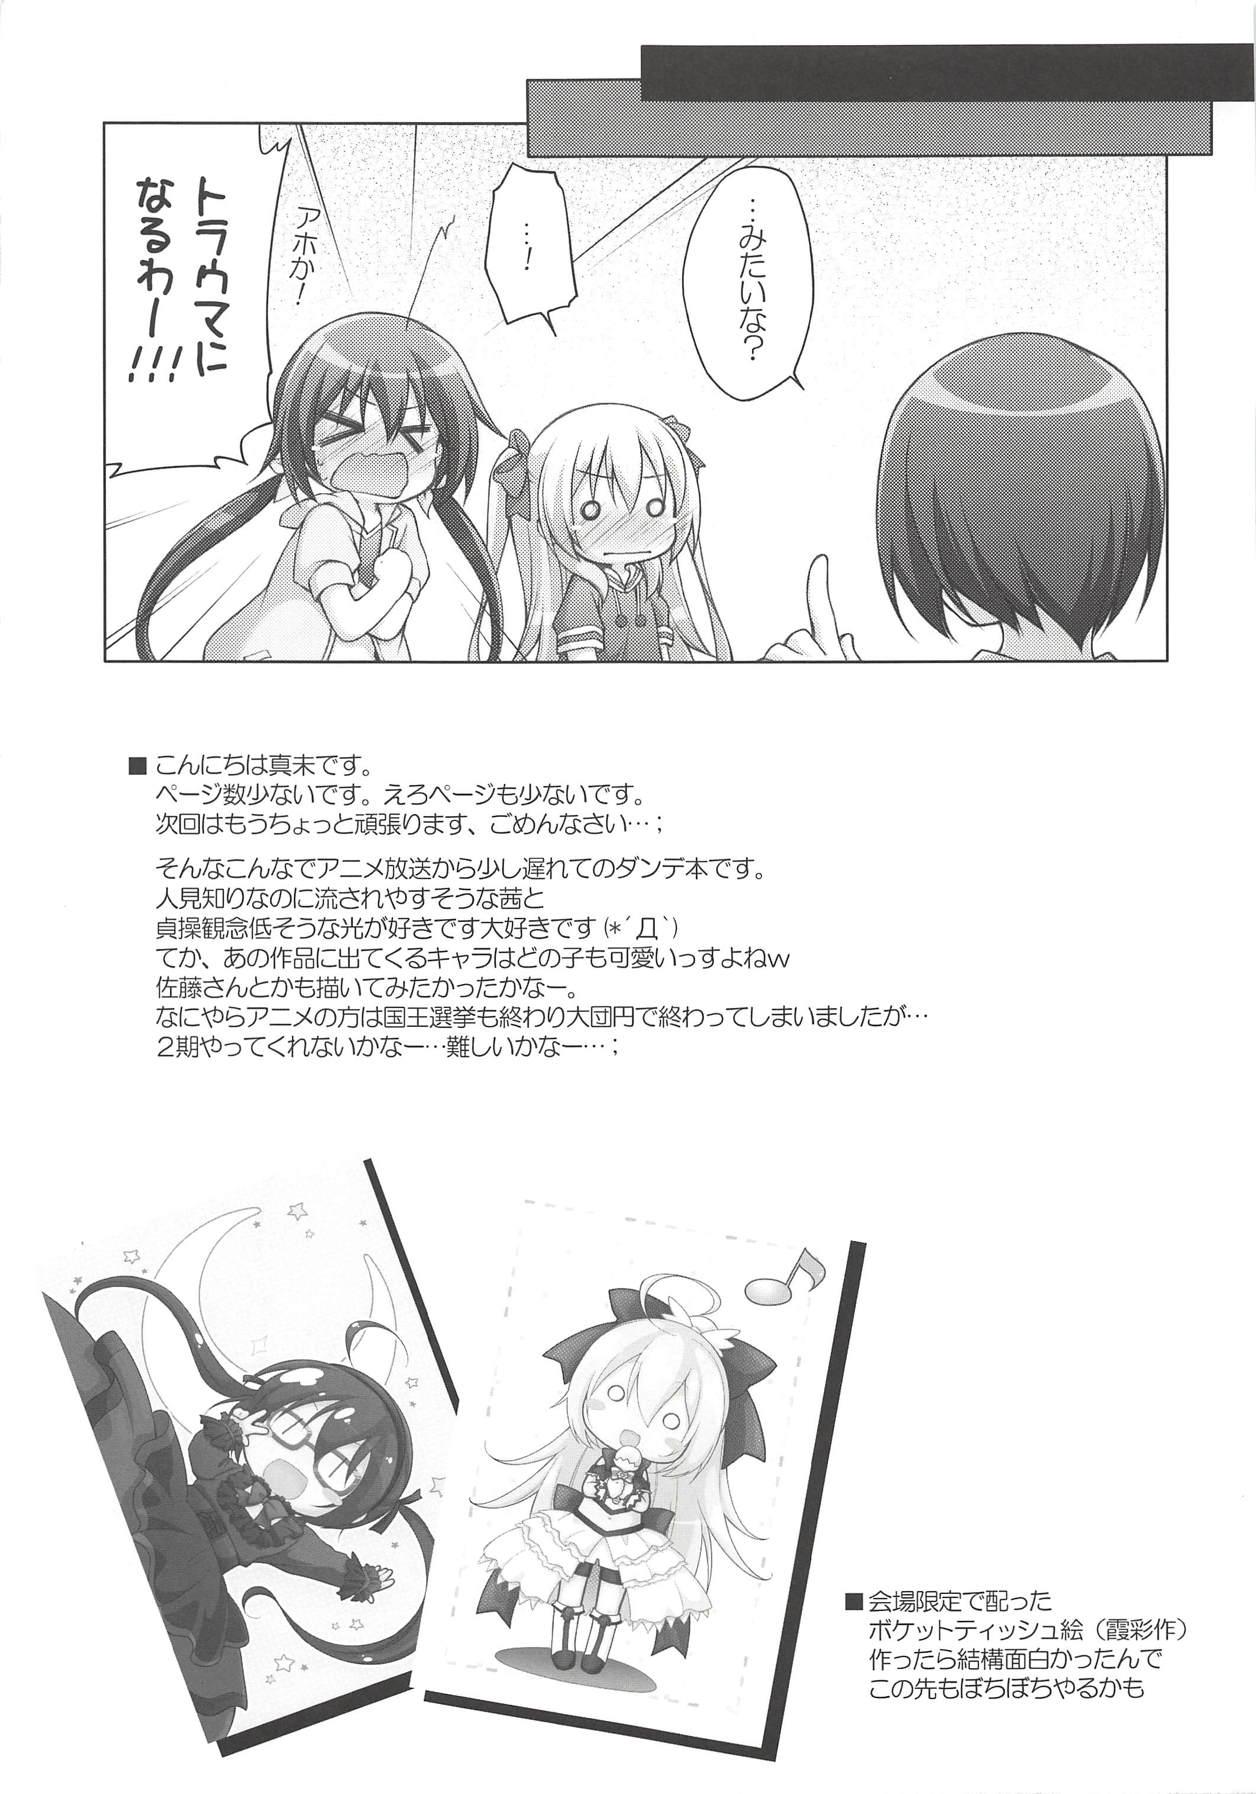 Anus Akane to Hikari no Maruhi Katsudou Houkoku - Joukamachi no dandelion Rebolando - Page 12